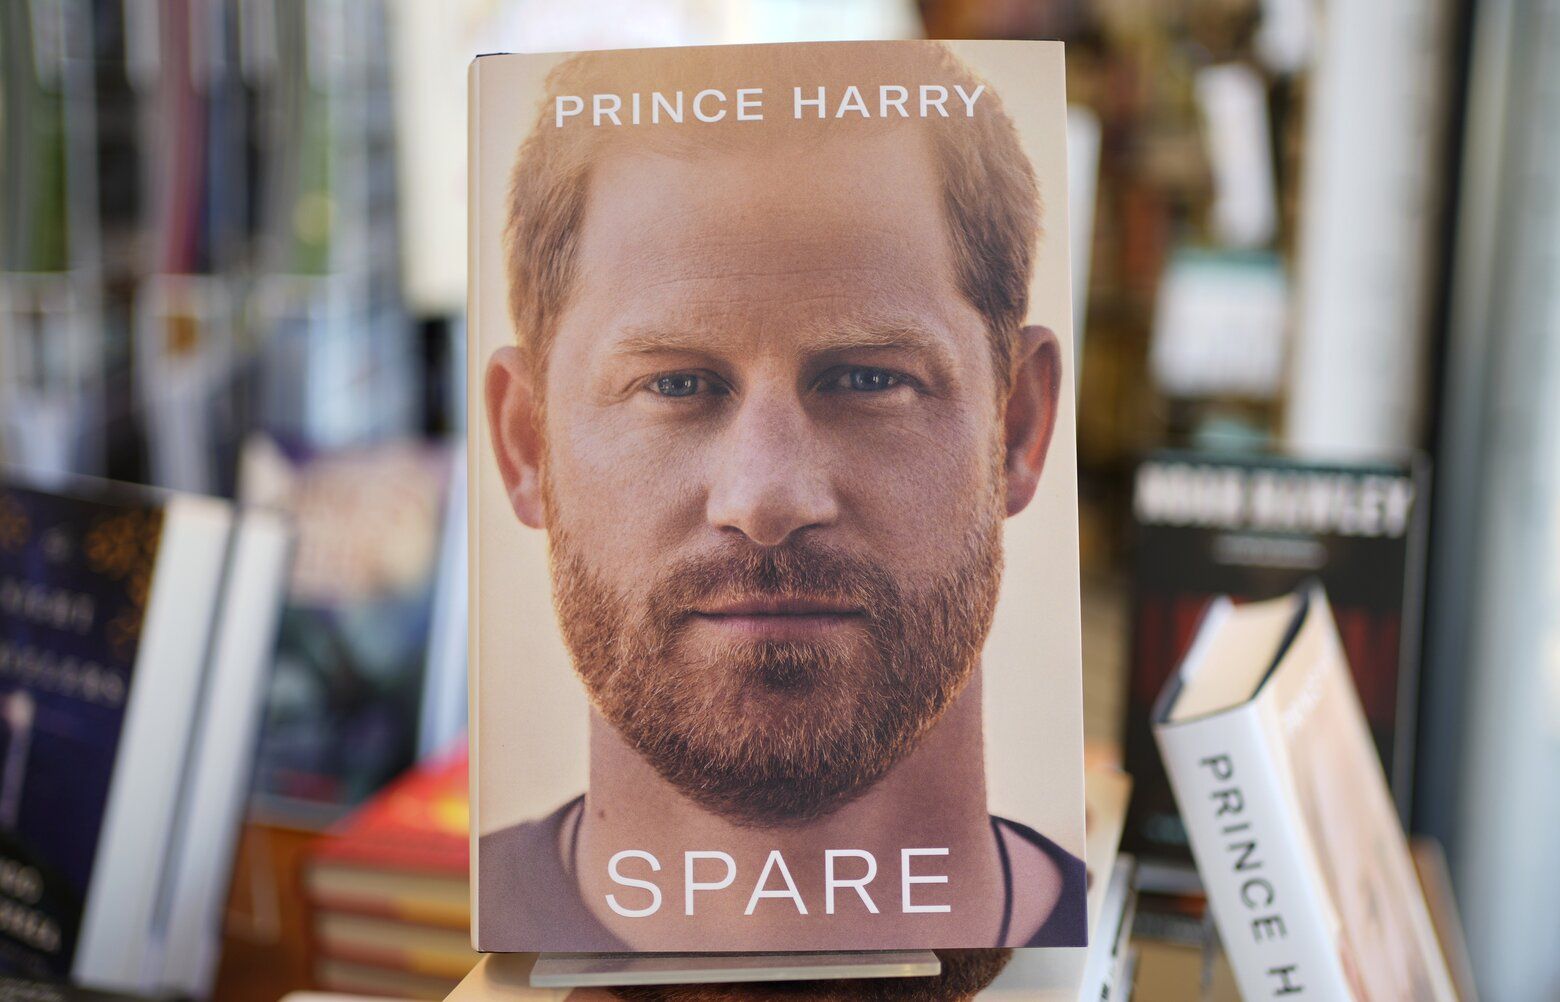 Prince Harry's memoir 'Spare' sells 3.2M copies in 1st week | The